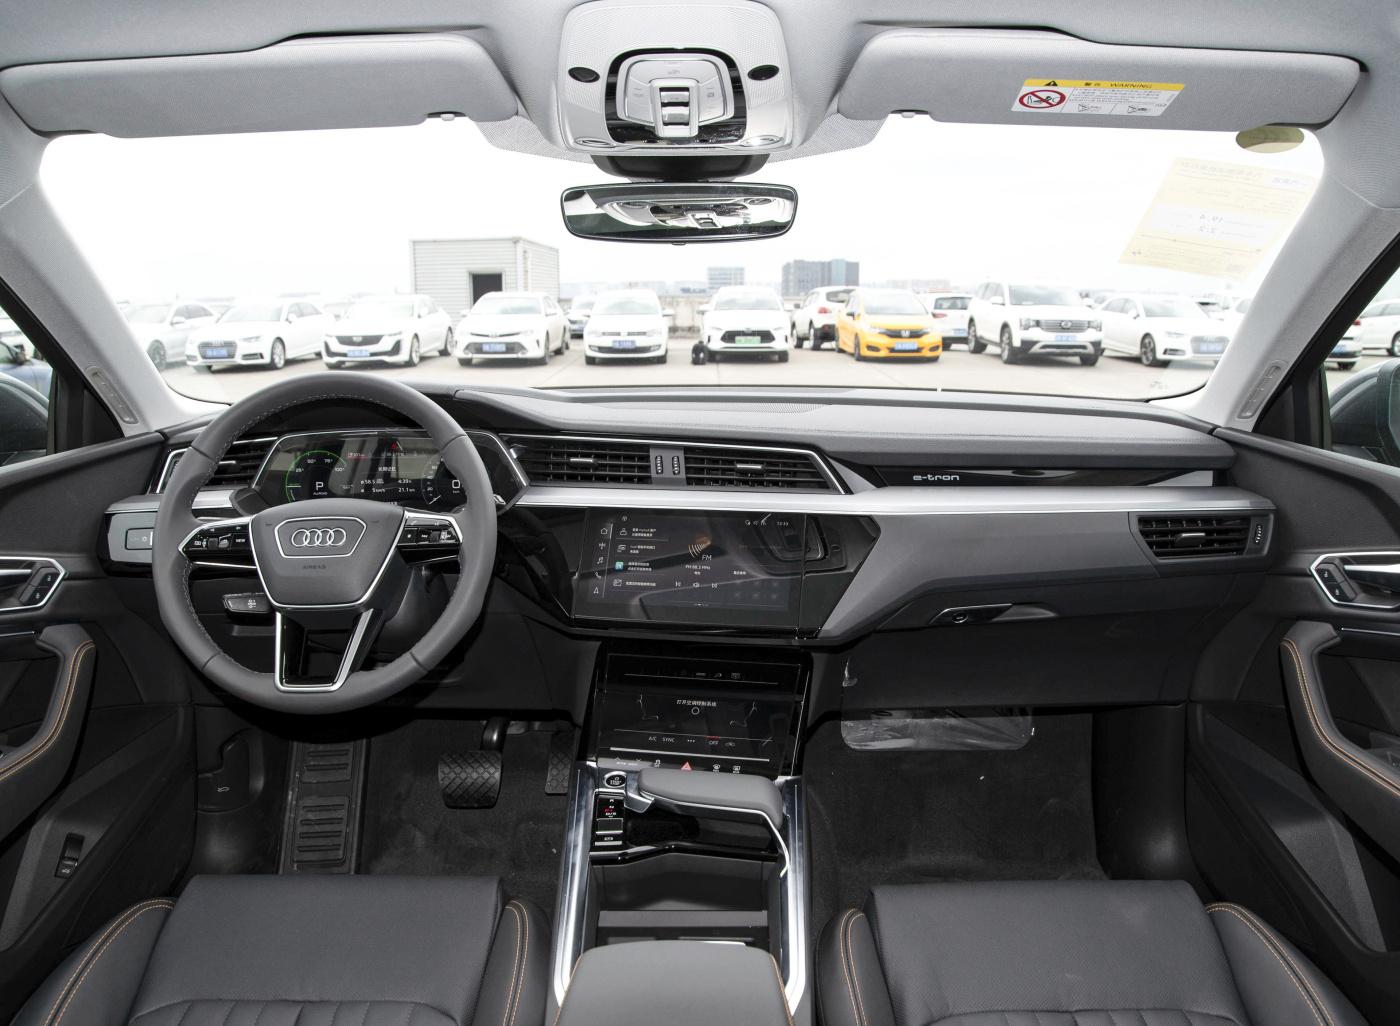 2021 Audi E-Tron Electric SUV Export Trade Supplier Company - Audi - 6